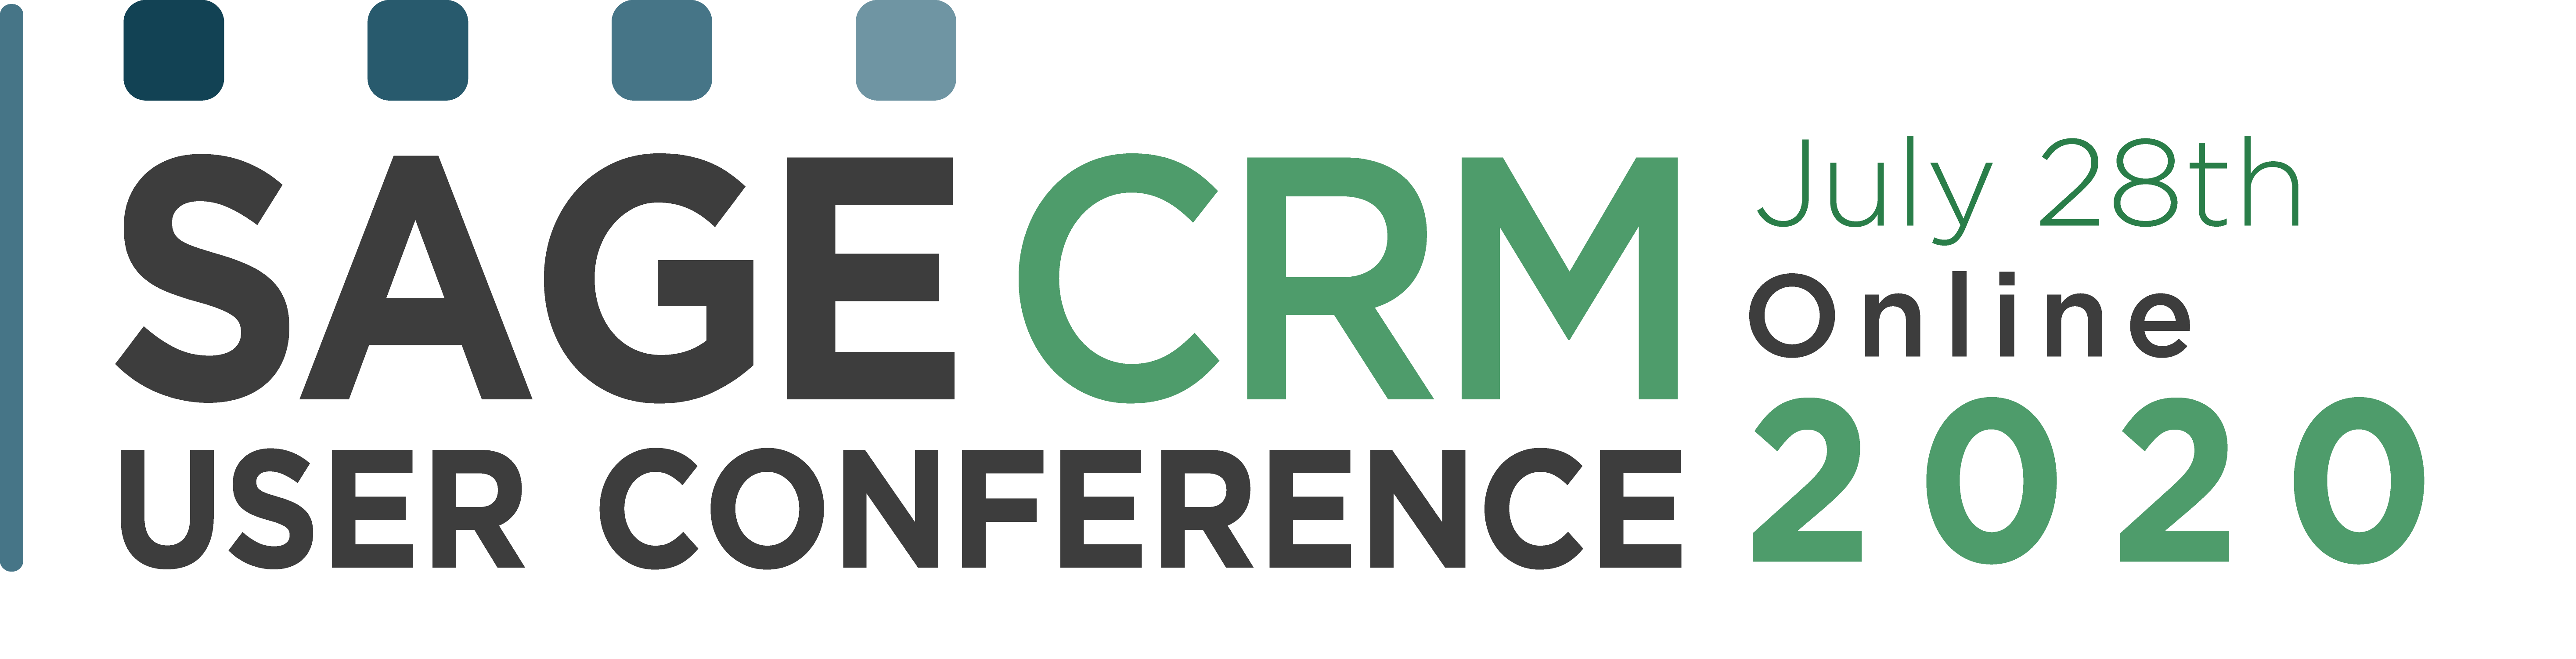 sage crm conference logo wide